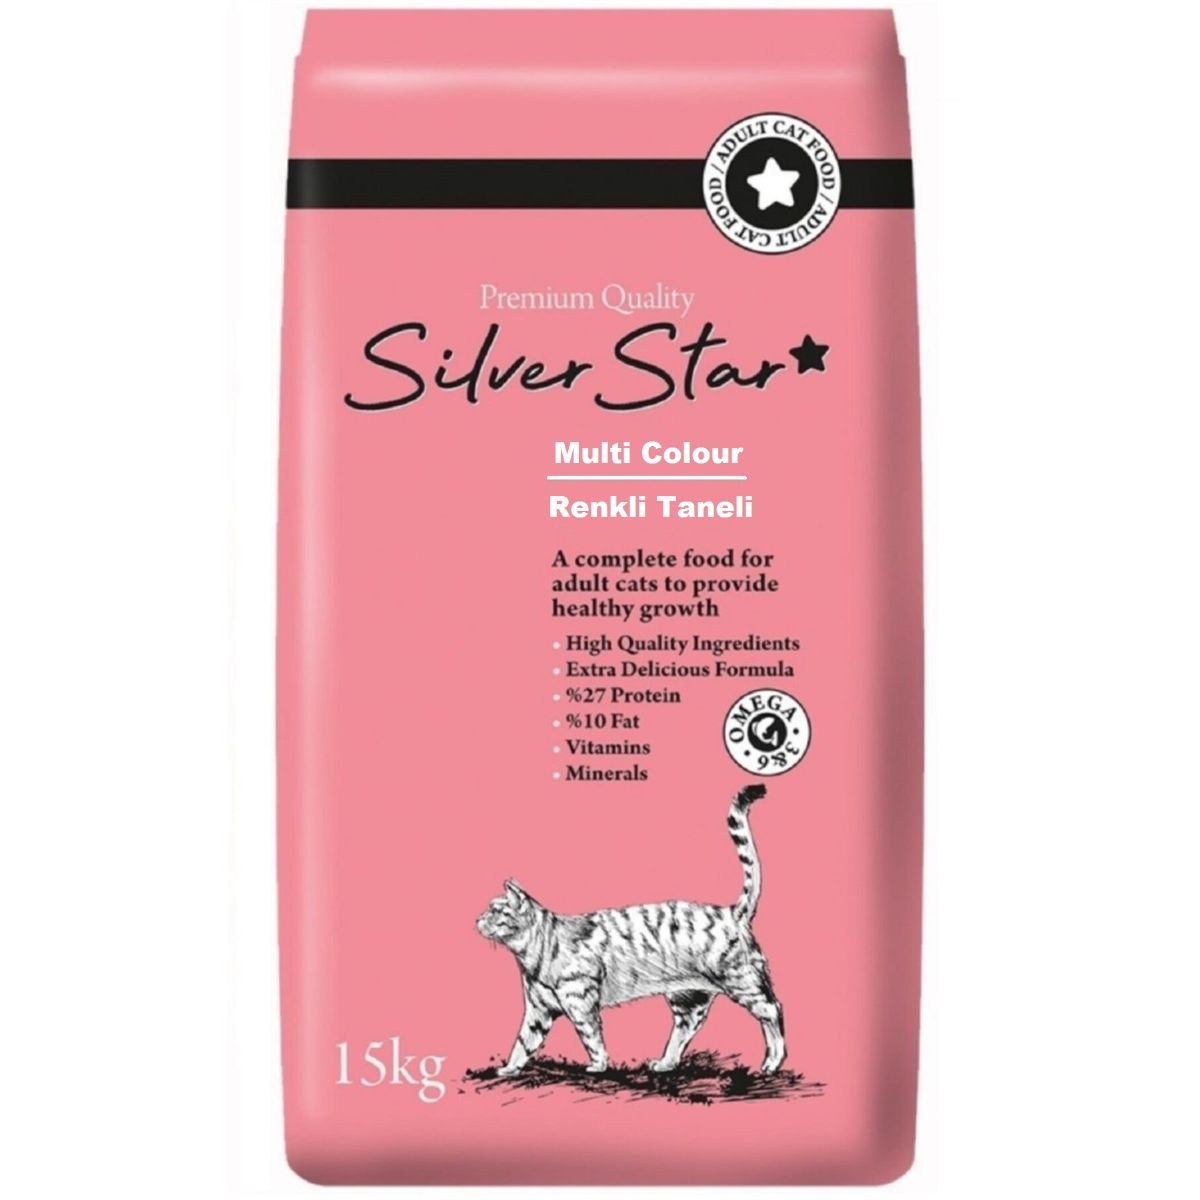 Yetişkin Kedi Mamaları | Silver Star MultiColour  Renkli Taneli Yetişkin Kedi Maması 15 Kg | silverstarmulticolour | 